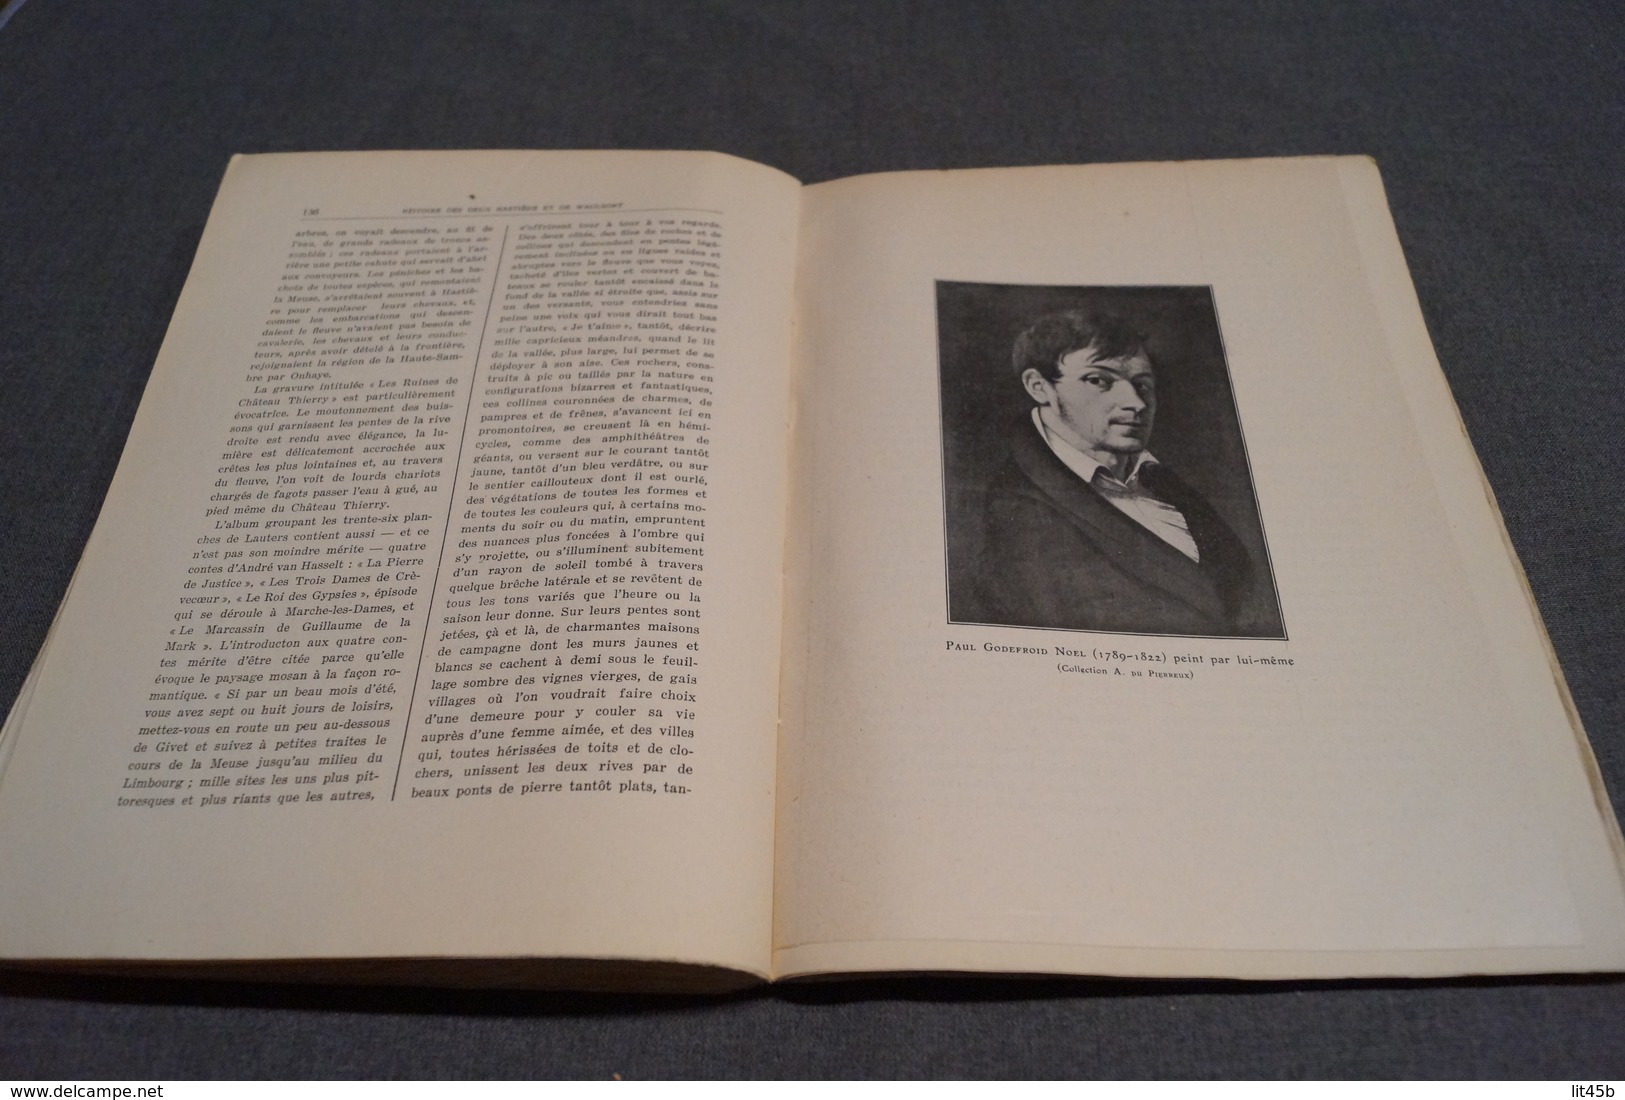 Histoire des deux Hastières et Waulsort,Namur 1927,Conte Xavier Carton de Wiart,199 pages,26 cm. sur 19 Cm.